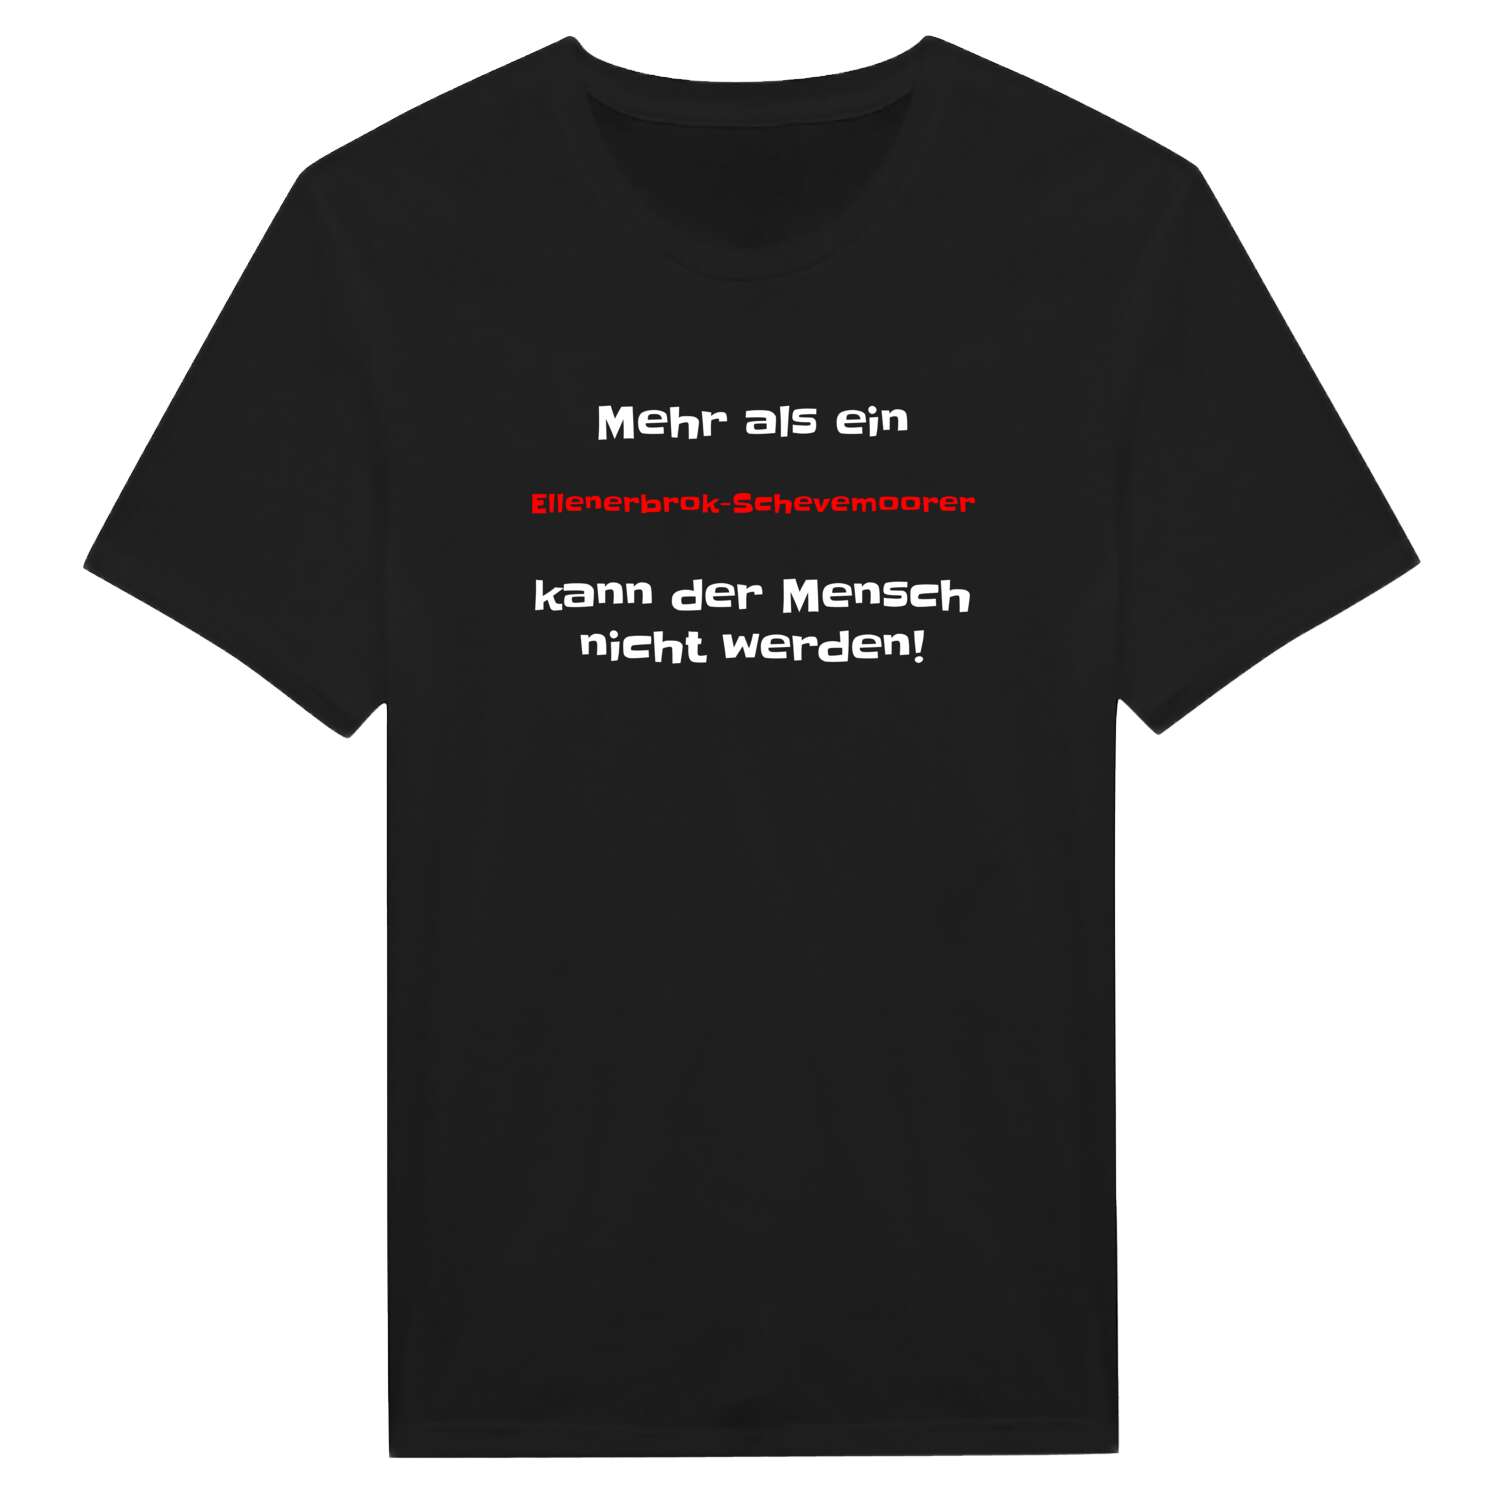 Ellenerbrok-Schevemoor T-Shirt »Mehr als ein«